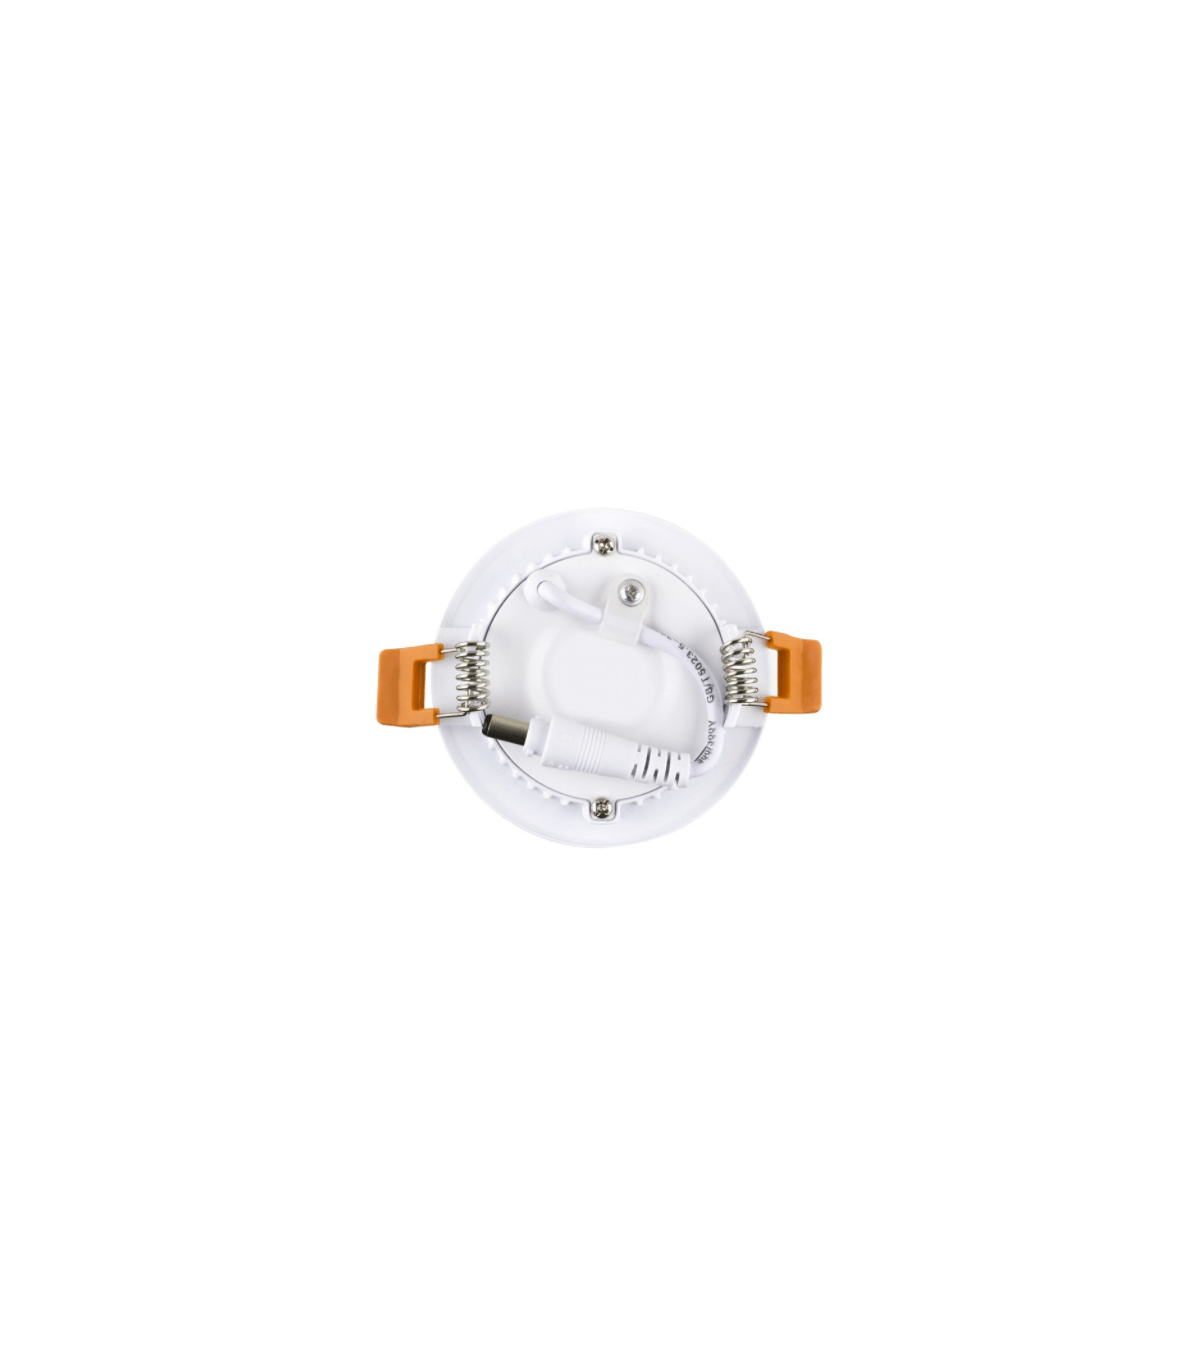 Plafonnier rond blanc Philips hue cct led 5w-350 lumens 230v